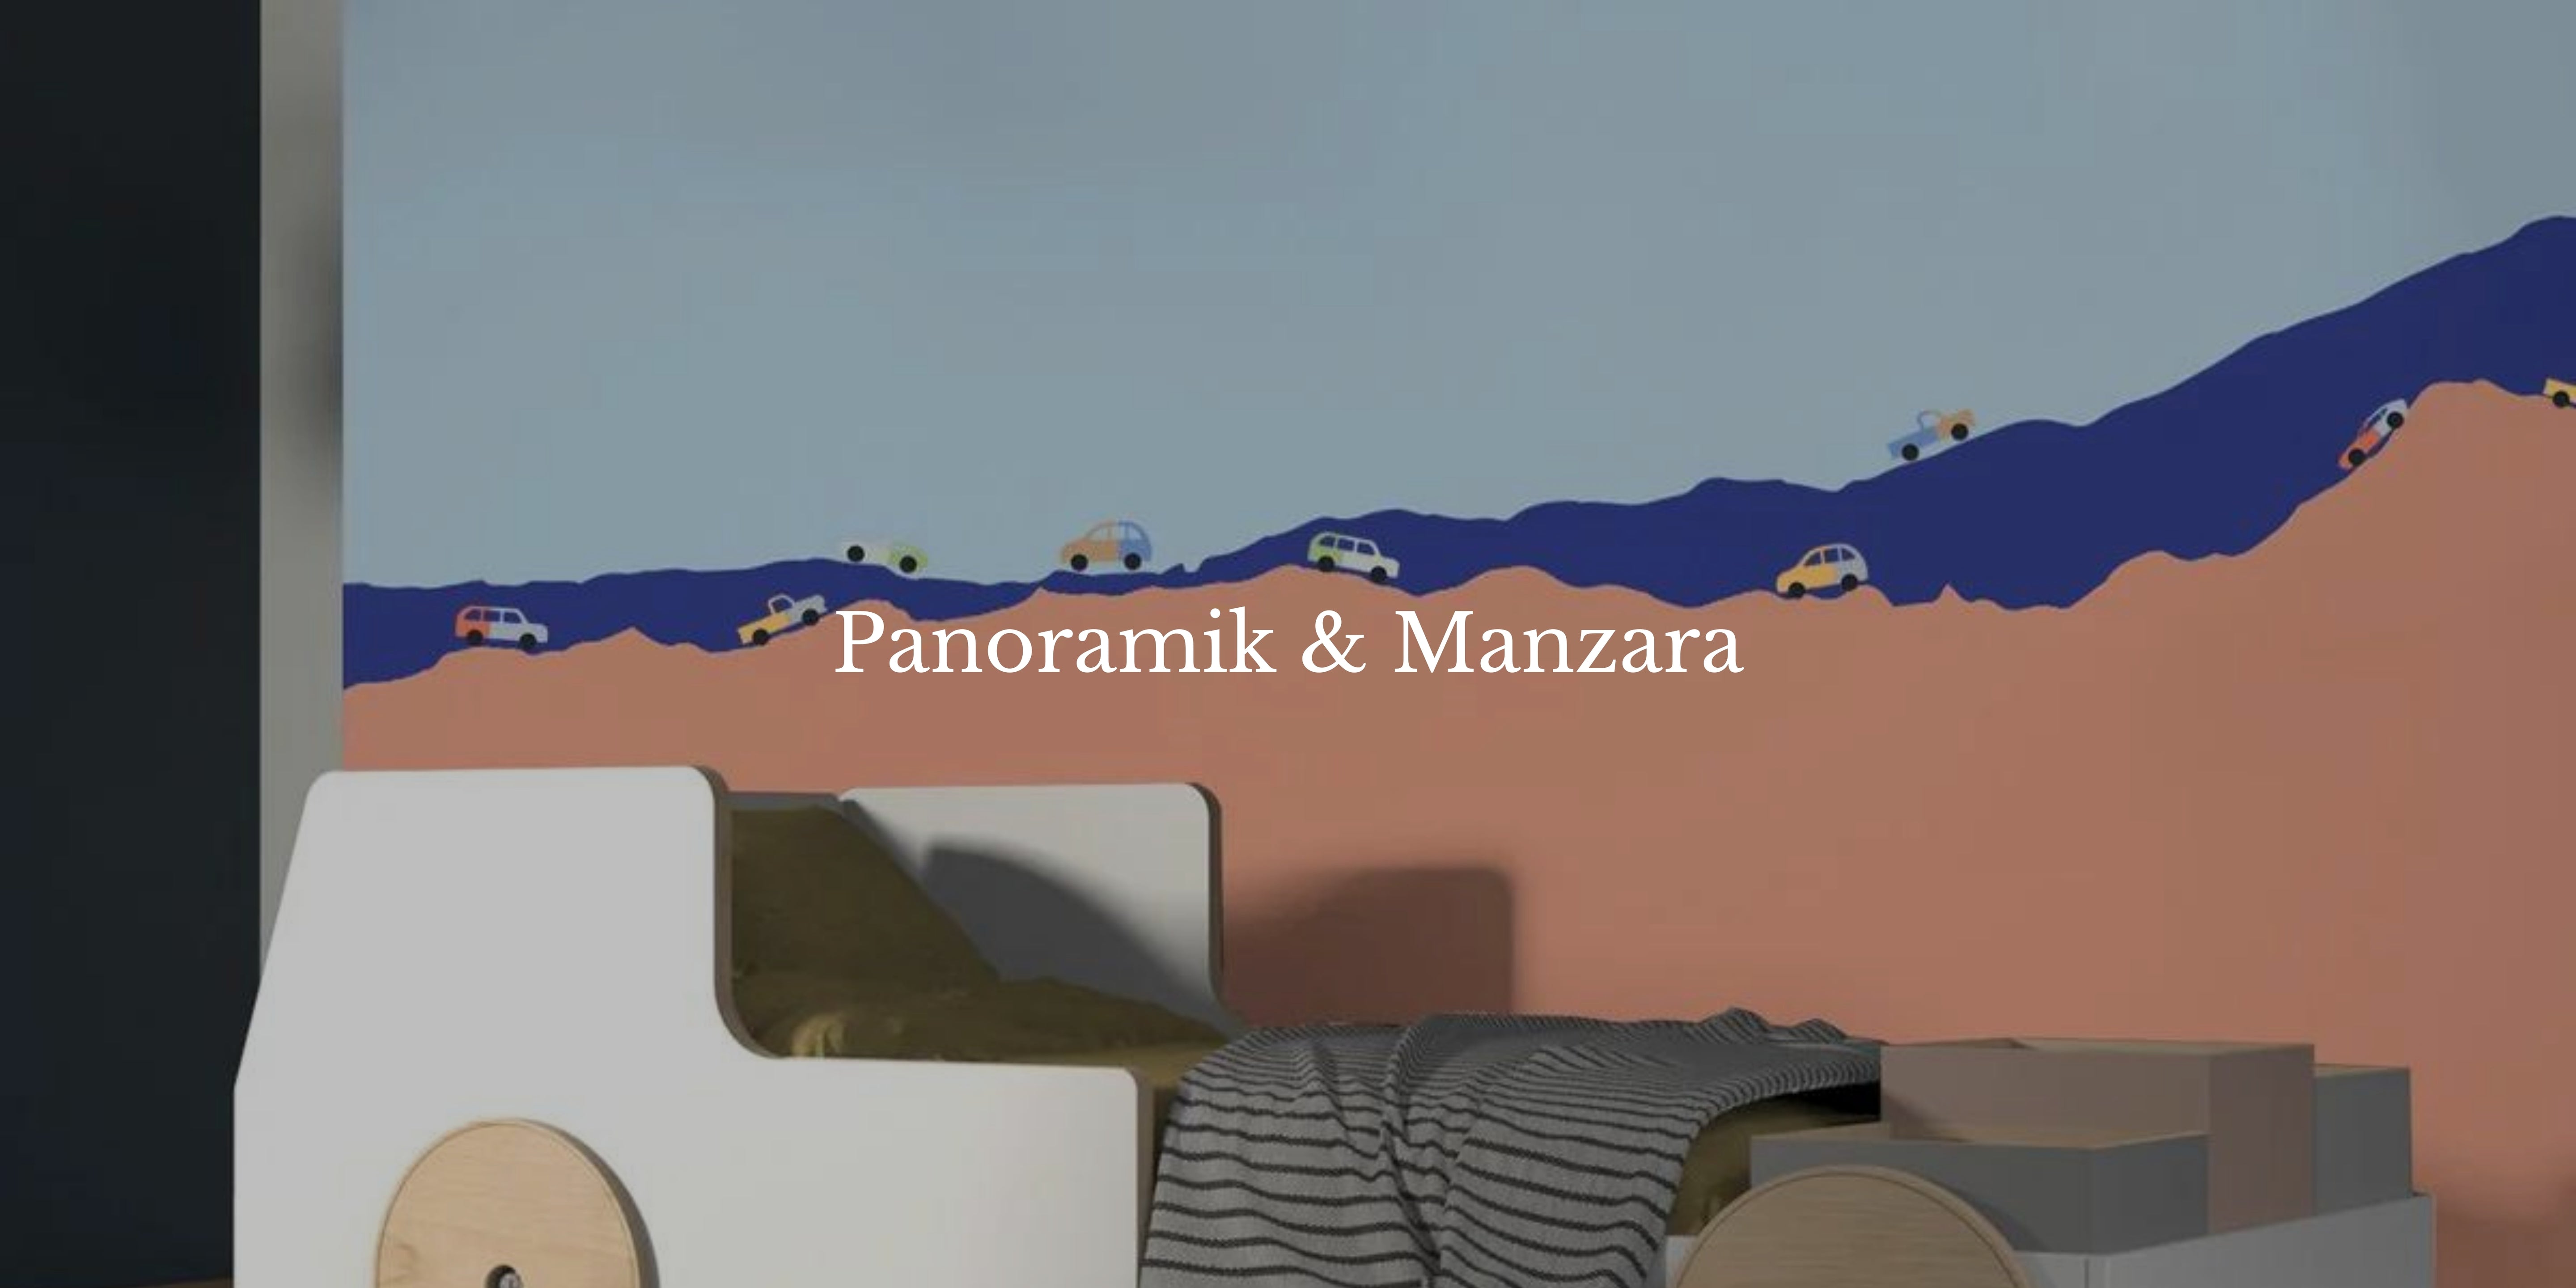 Panoramik & Manzara